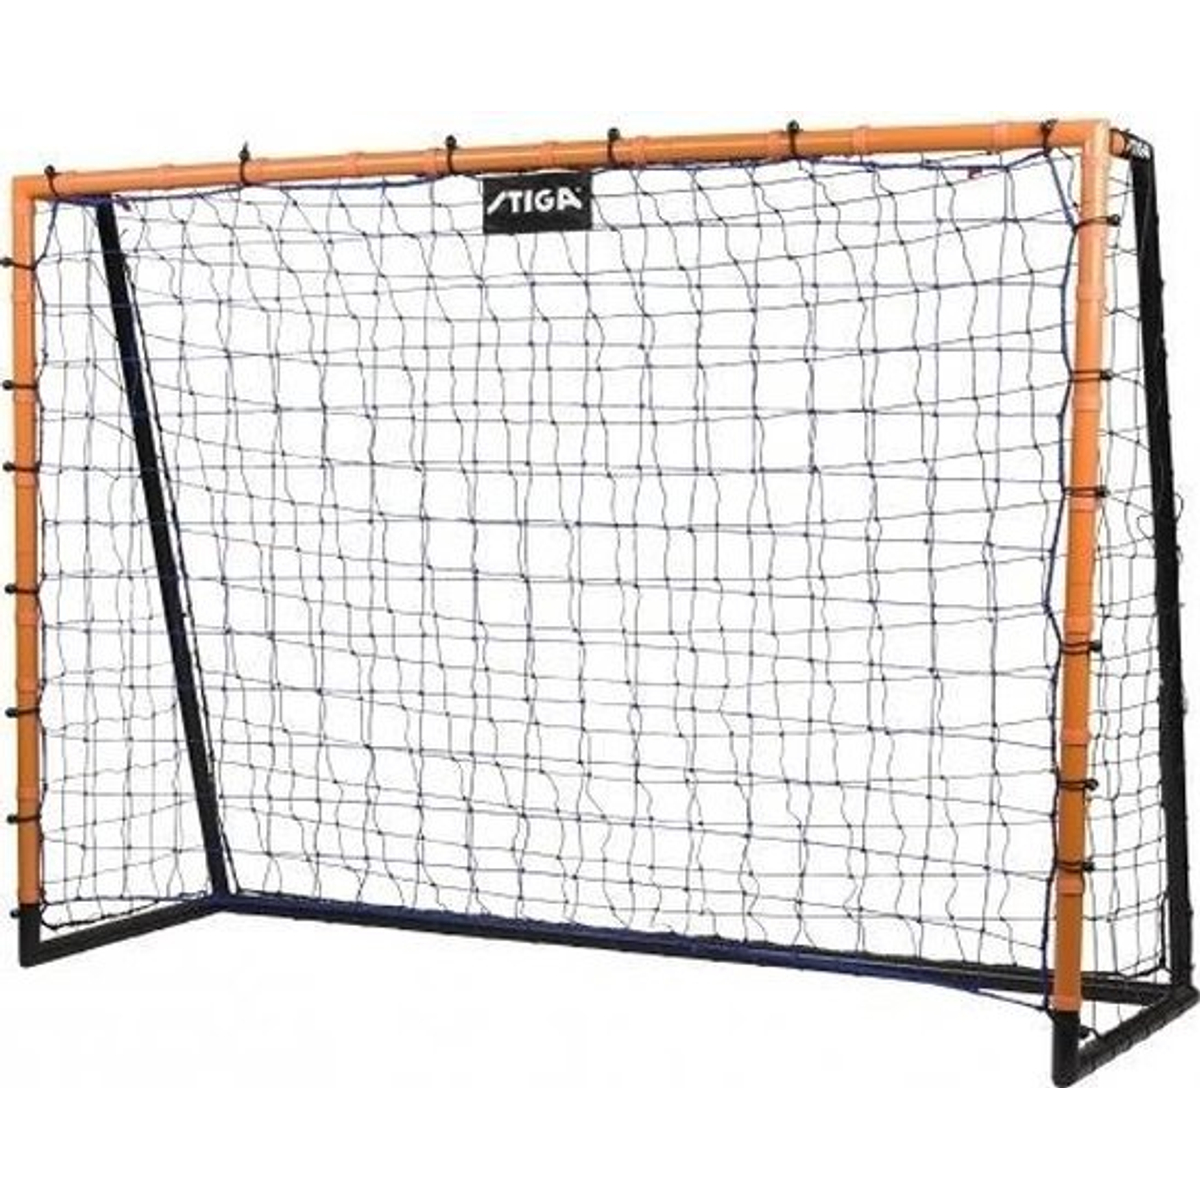 Stiga - Rebounder net for Scorer Football Goal 210 x 150 x 70 cm